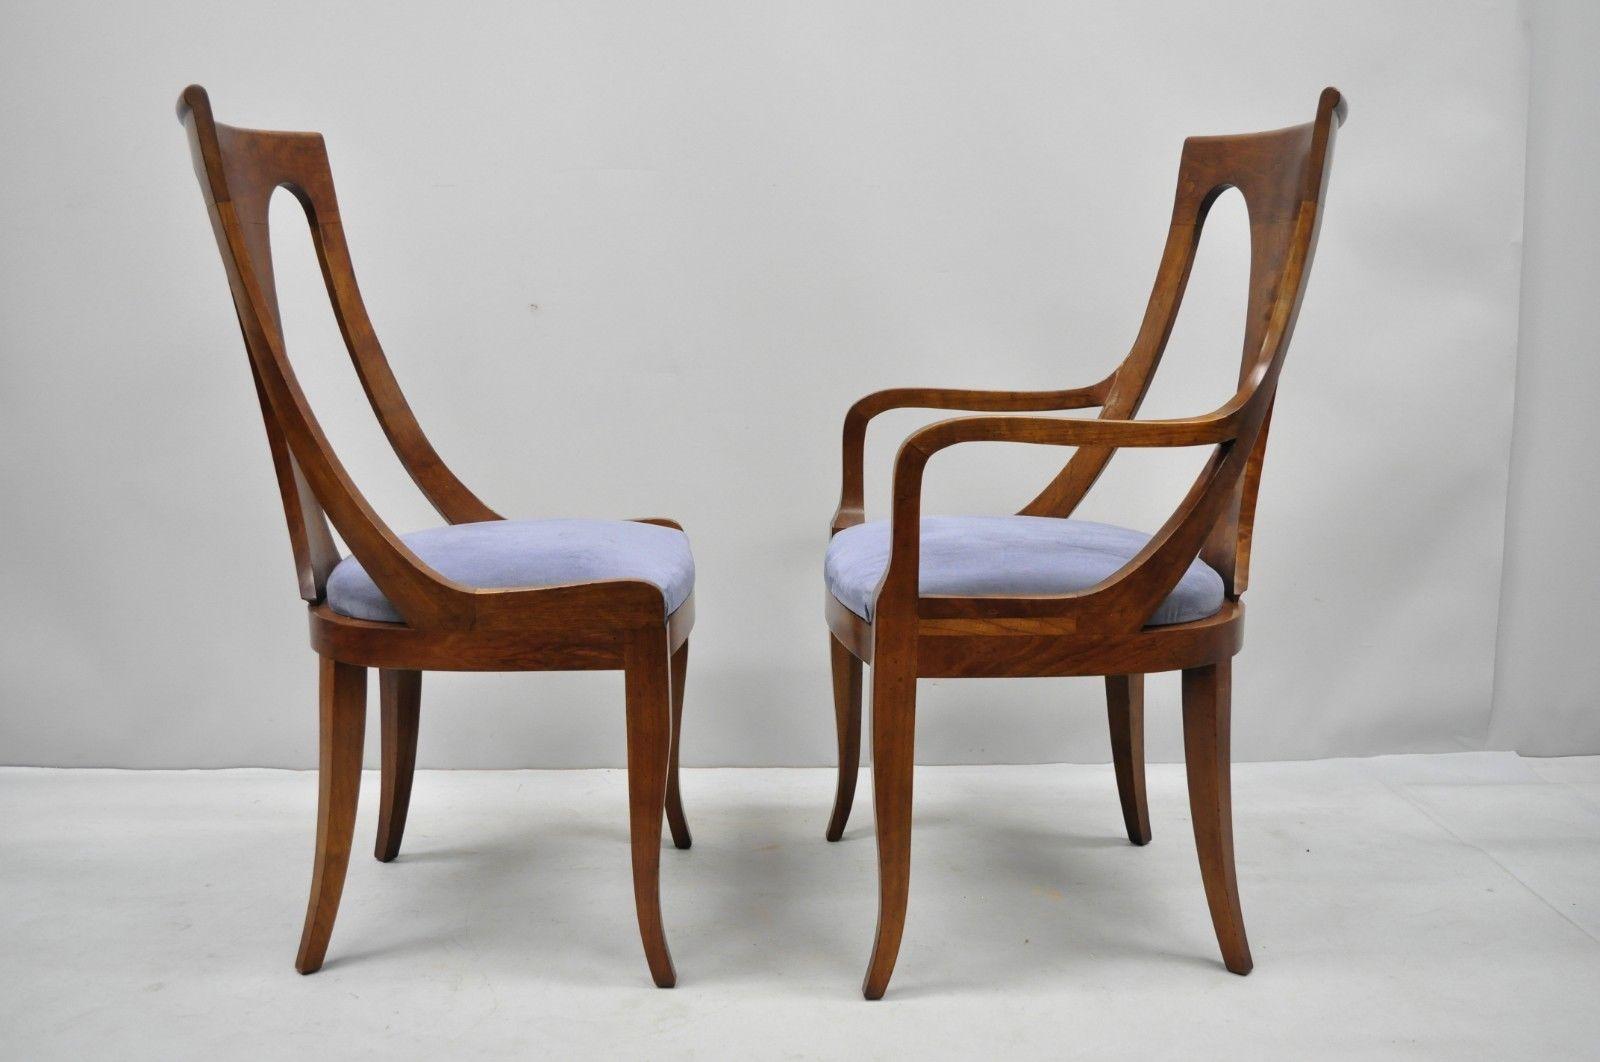 Sechs Nussbaumstühle im Regency-Stil mit geschwungener Rückenlehne und Säbelbeinen im Esszimmer (20. Jahrhundert)